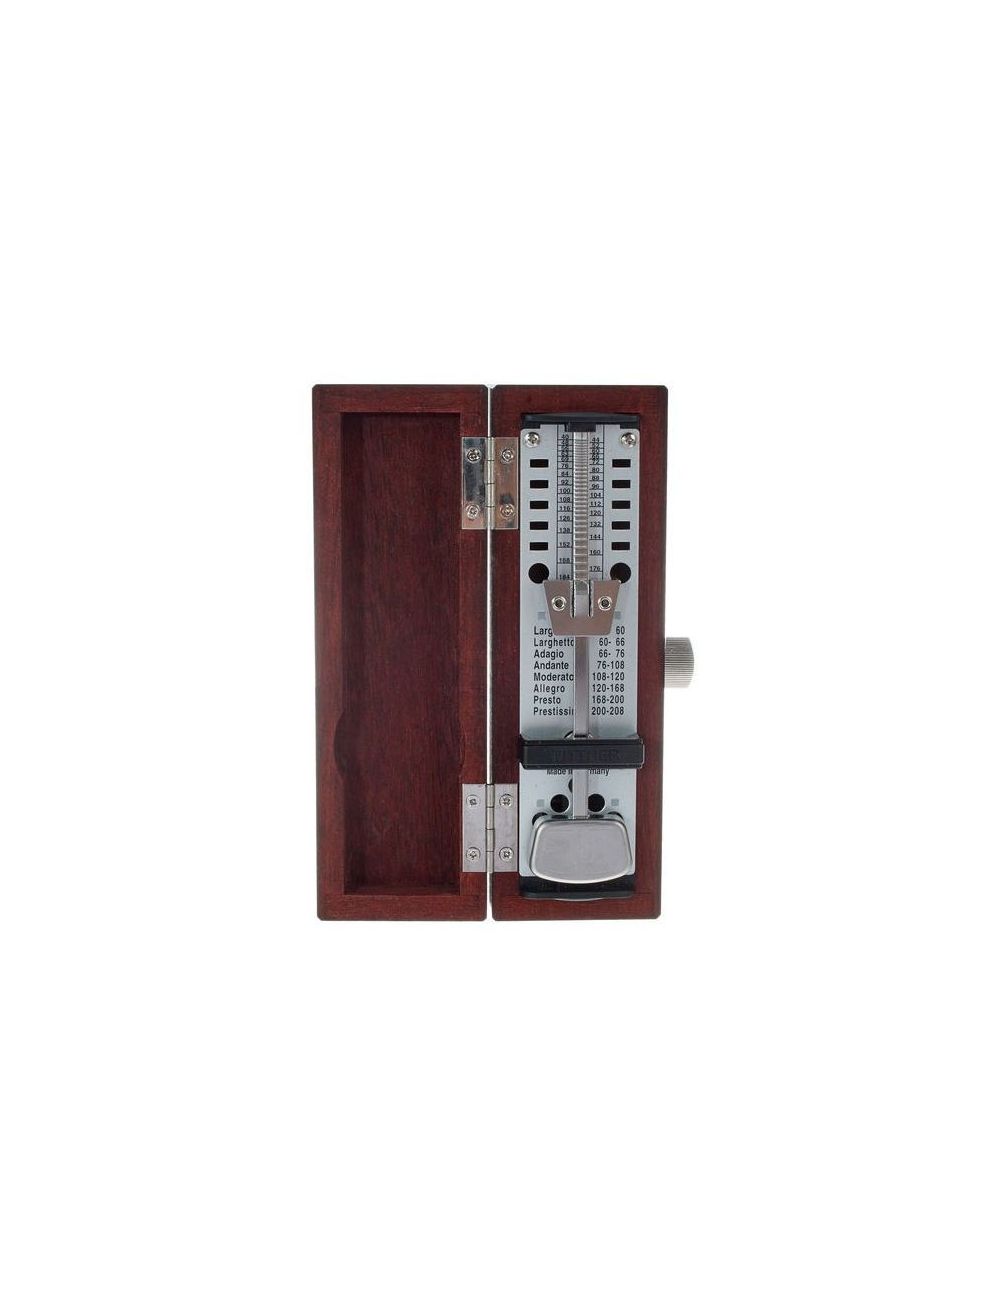 Wittner Taktell SUPER MINI 880.2 metronome in solid wood Taktell SUPER MINI 880210 tuners and metronomes